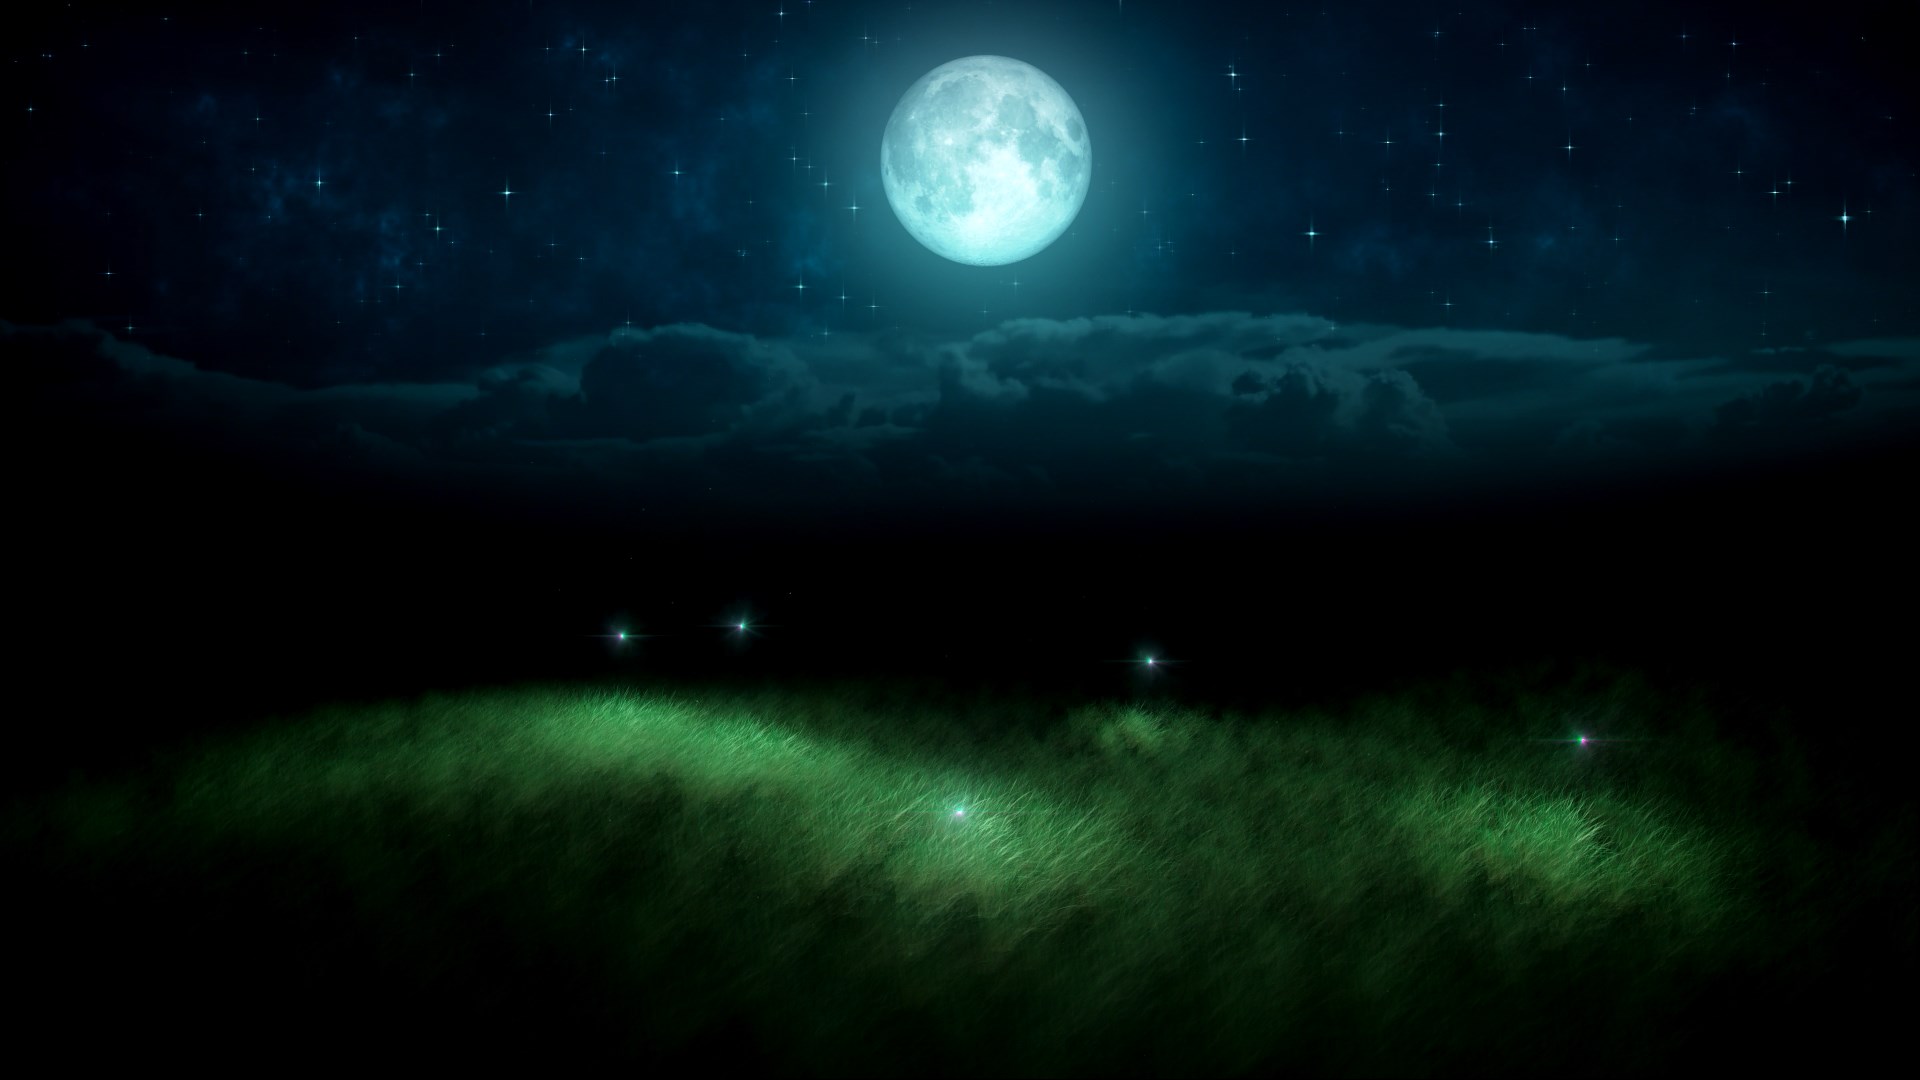 Cảnh đêm với ánh sáng của đom đóm và trăng tròn cực kì độc đáo và lãng mạn sẽ đưa bạn đến một thế giới sống động, tạo cảm giác đang hòa mình vào một không gian đẹp đến ngỡ ngàng.